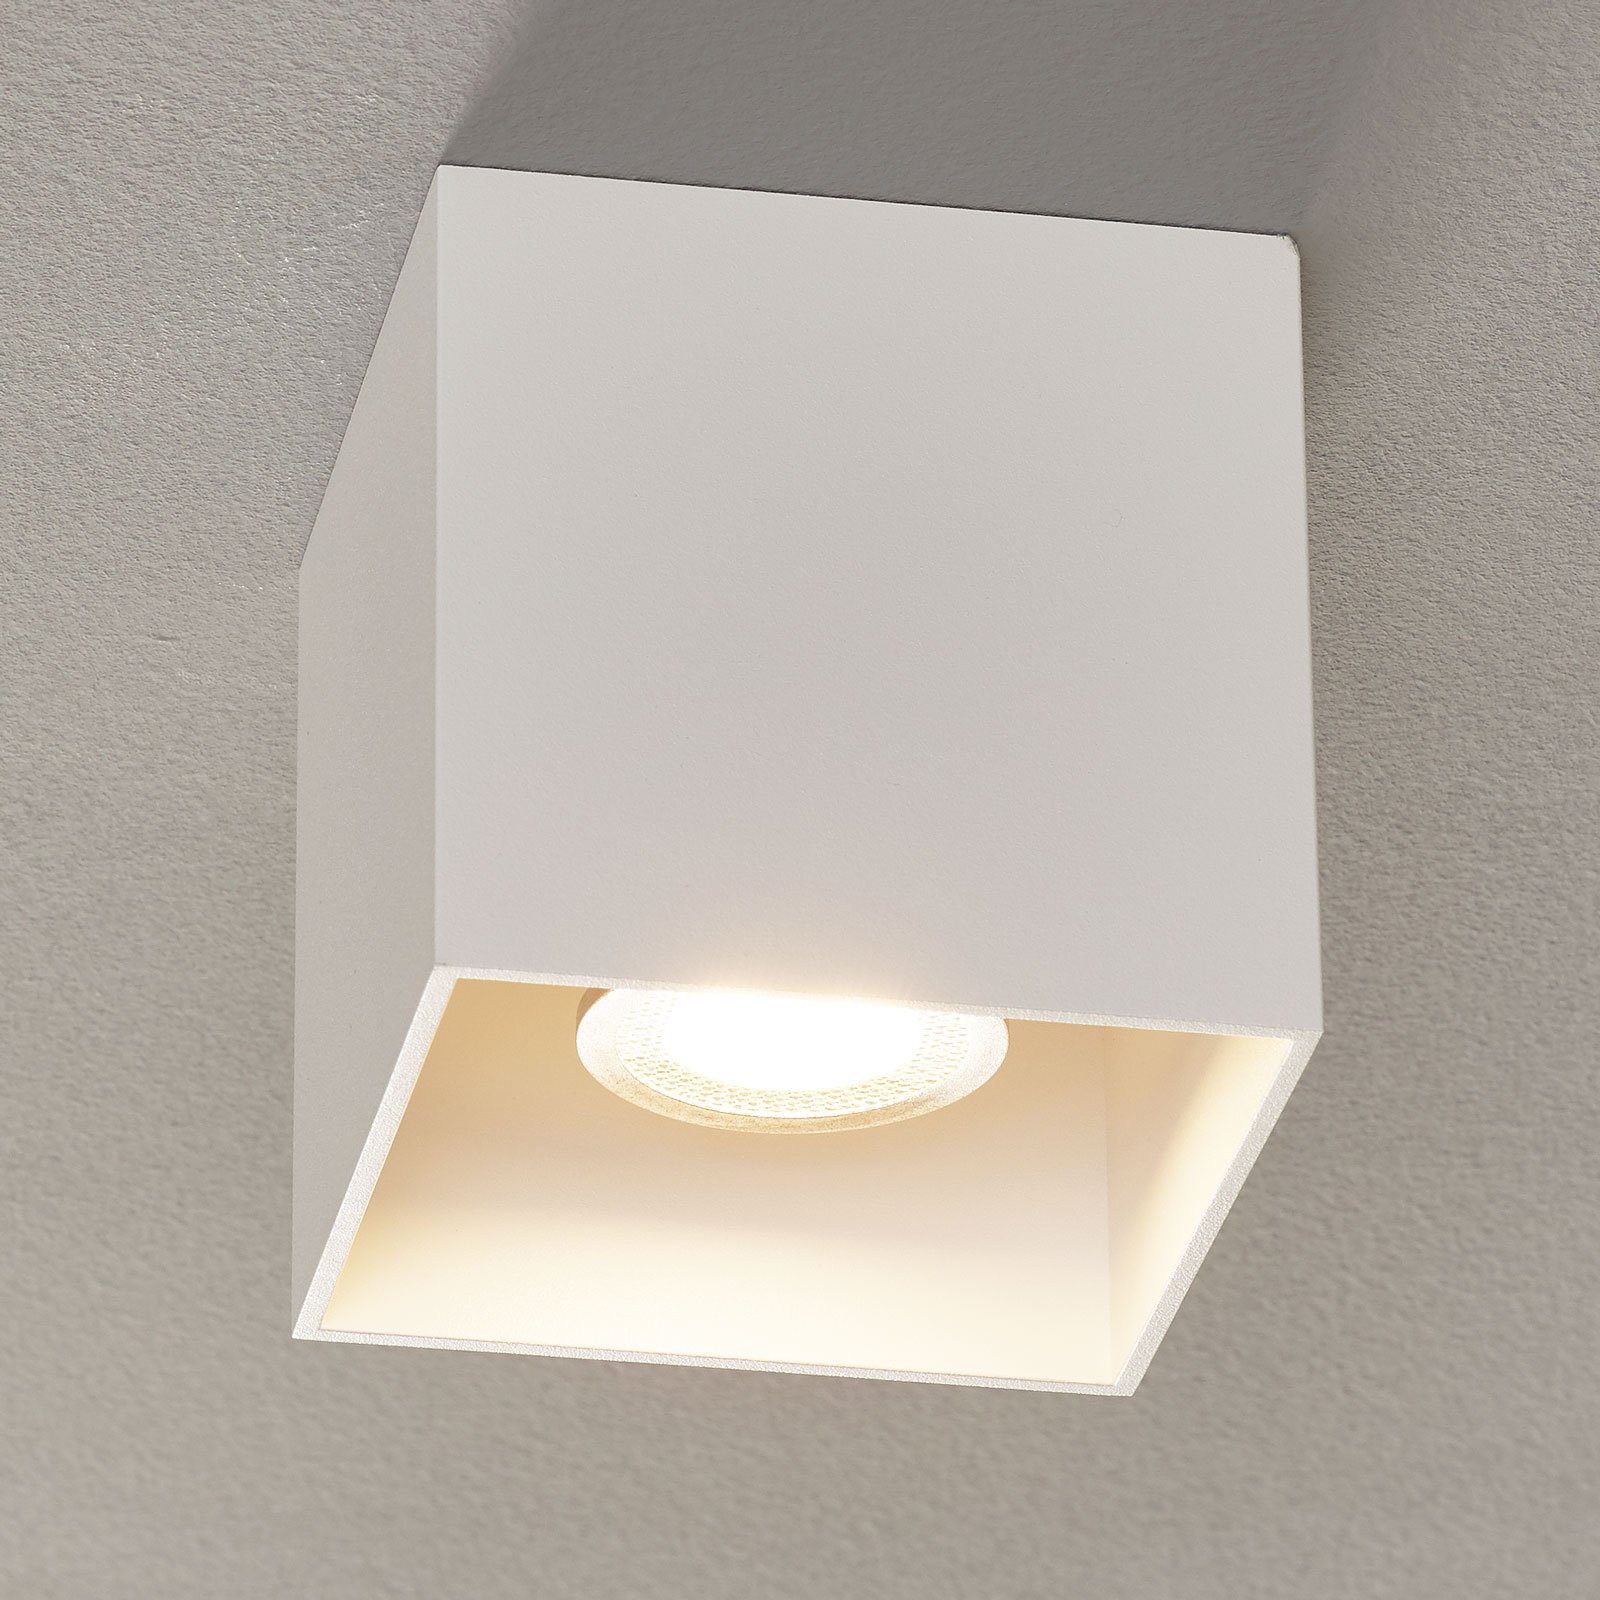 WEVER & DUCRÉ Box 1.0 PAR16 ceiling lamp white